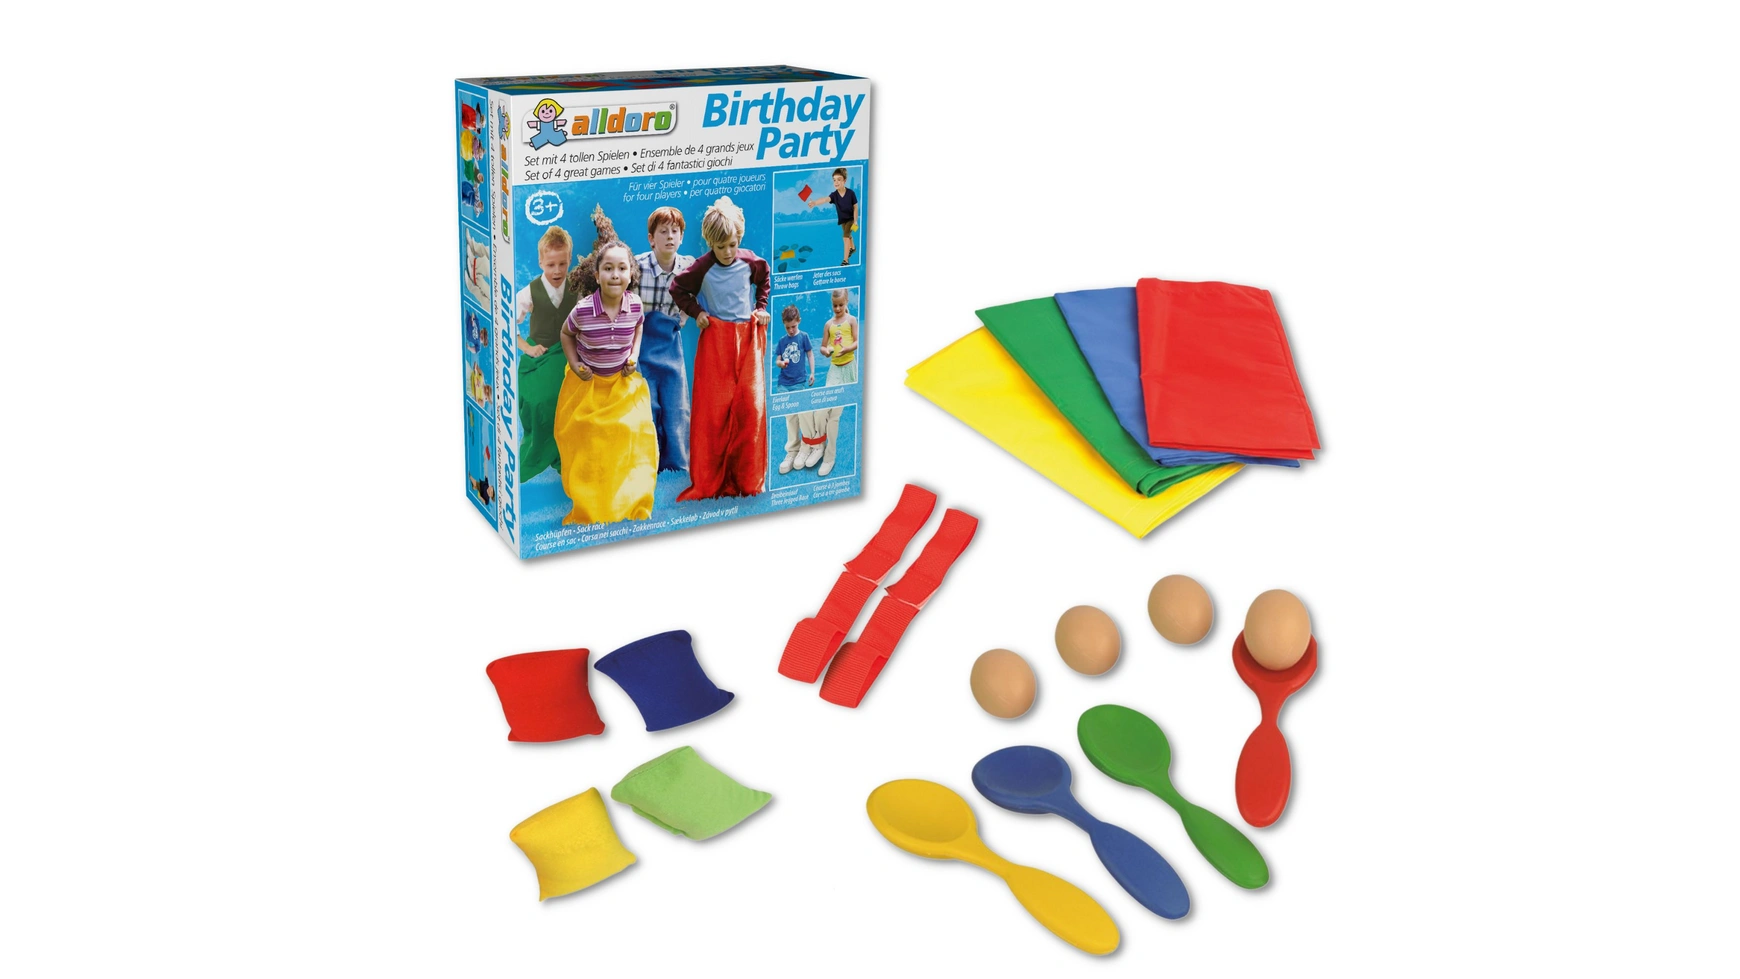 Alldoro Набор для вечеринки по случаю дня рождения с 4 популярными играми для детских дней рождения